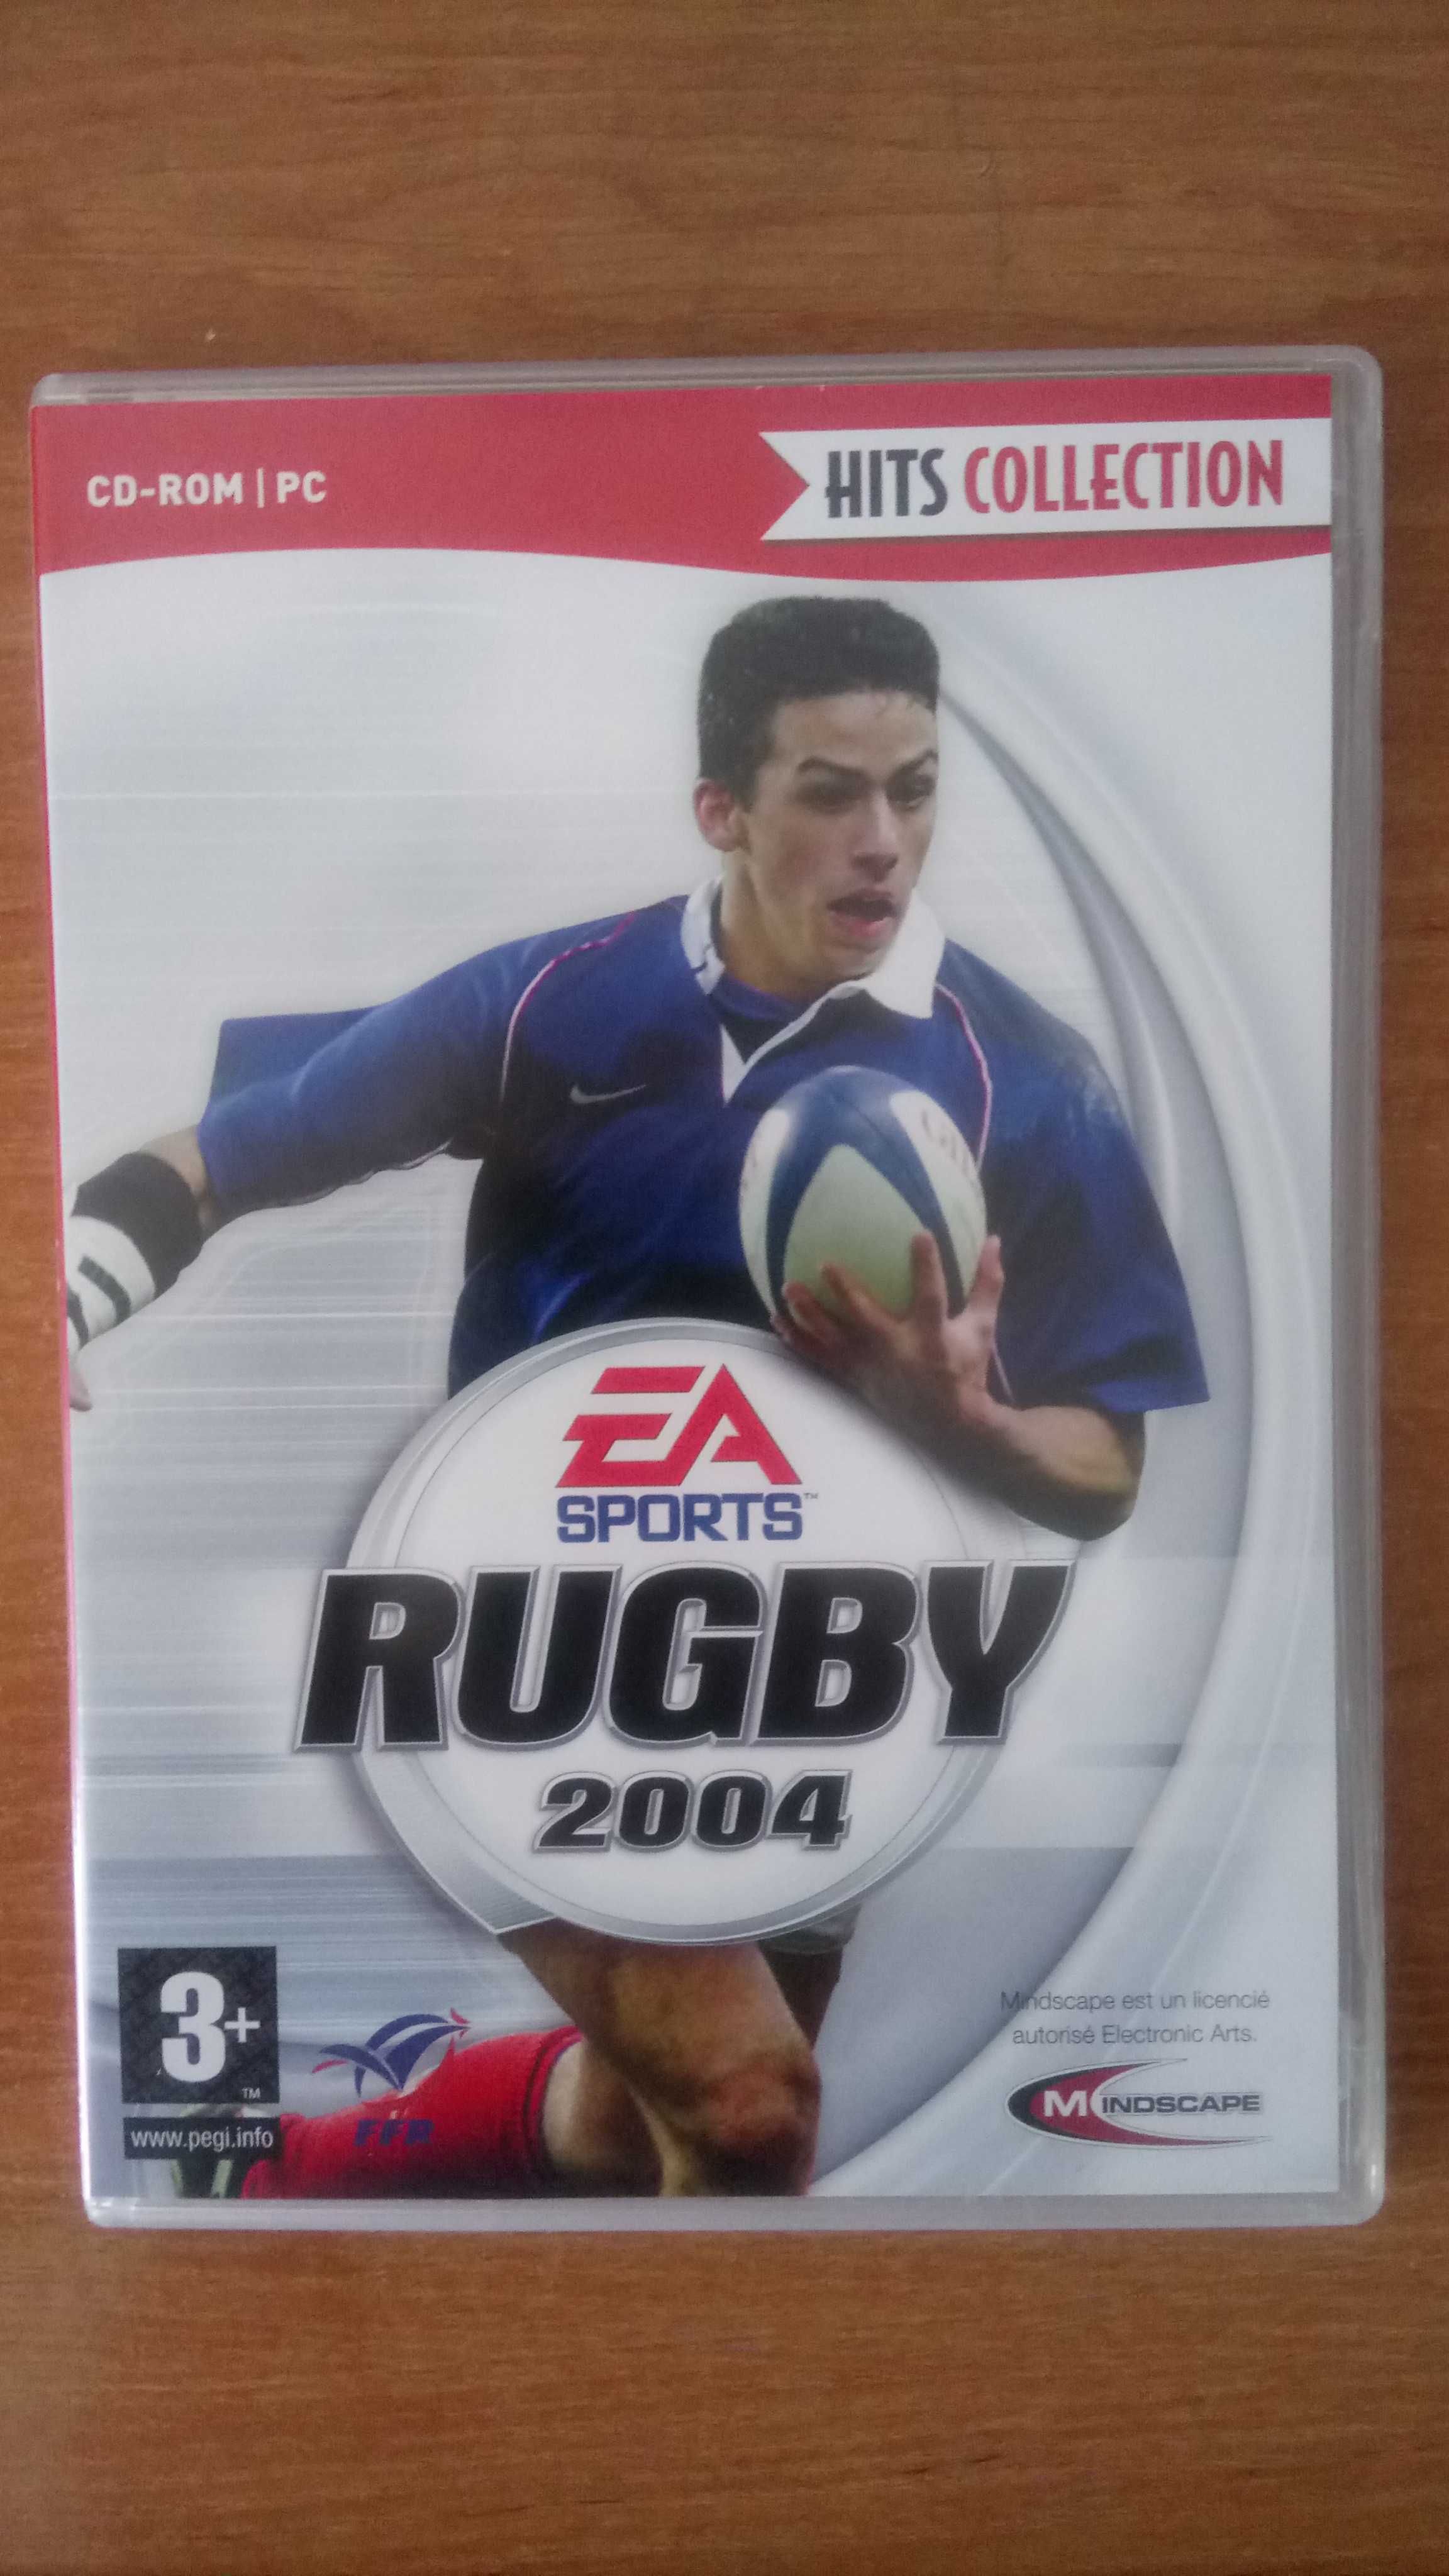 Rugby 2004 - Gra PC wersja francuska